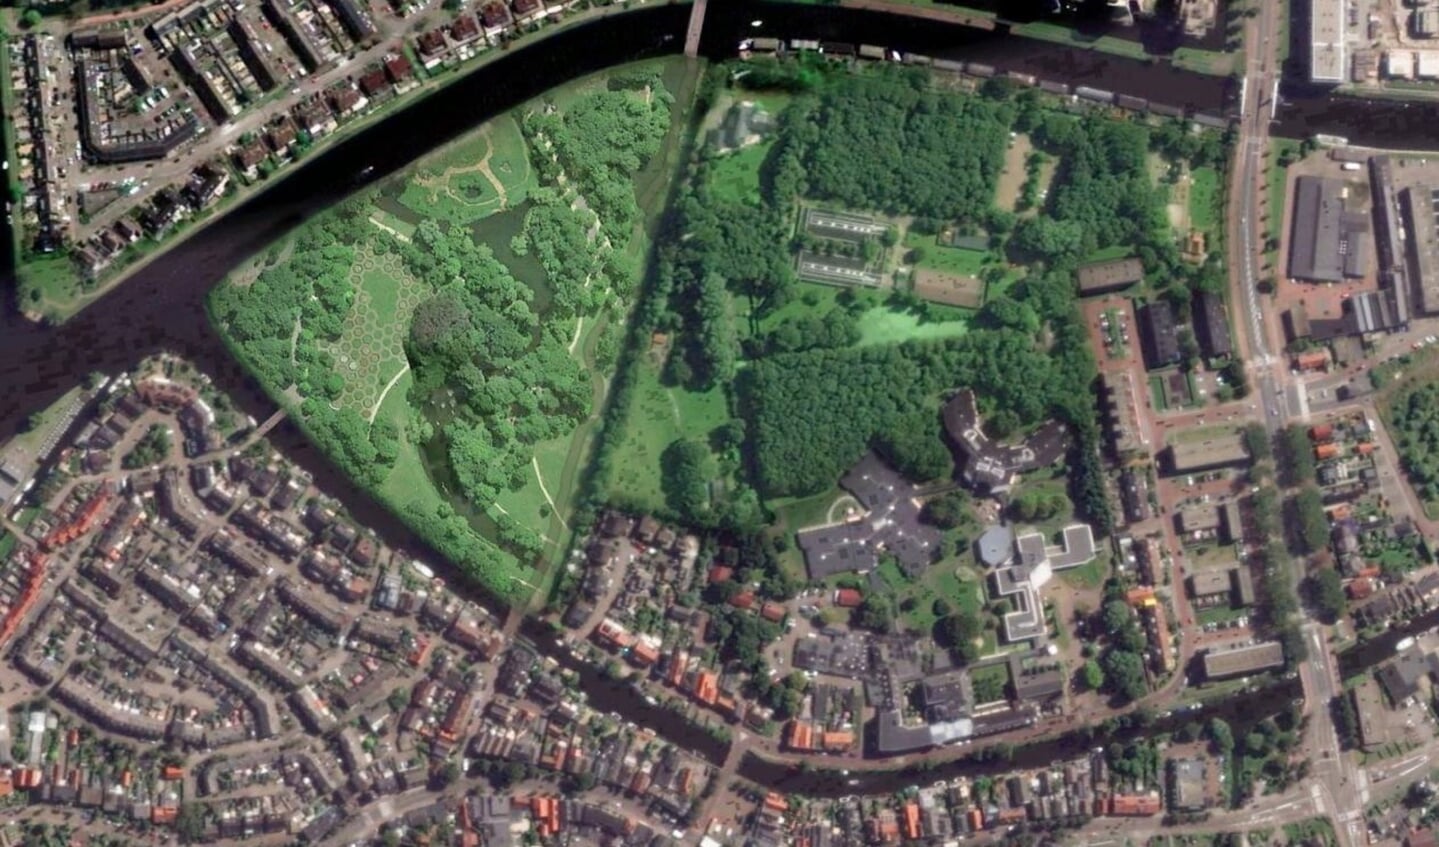 Zo ziet stichting 'Vrienden van het RijnPark' de toekomst van de Kwakkelwei (het groene eiland links) het liefst: een onbebouwd stadspark.